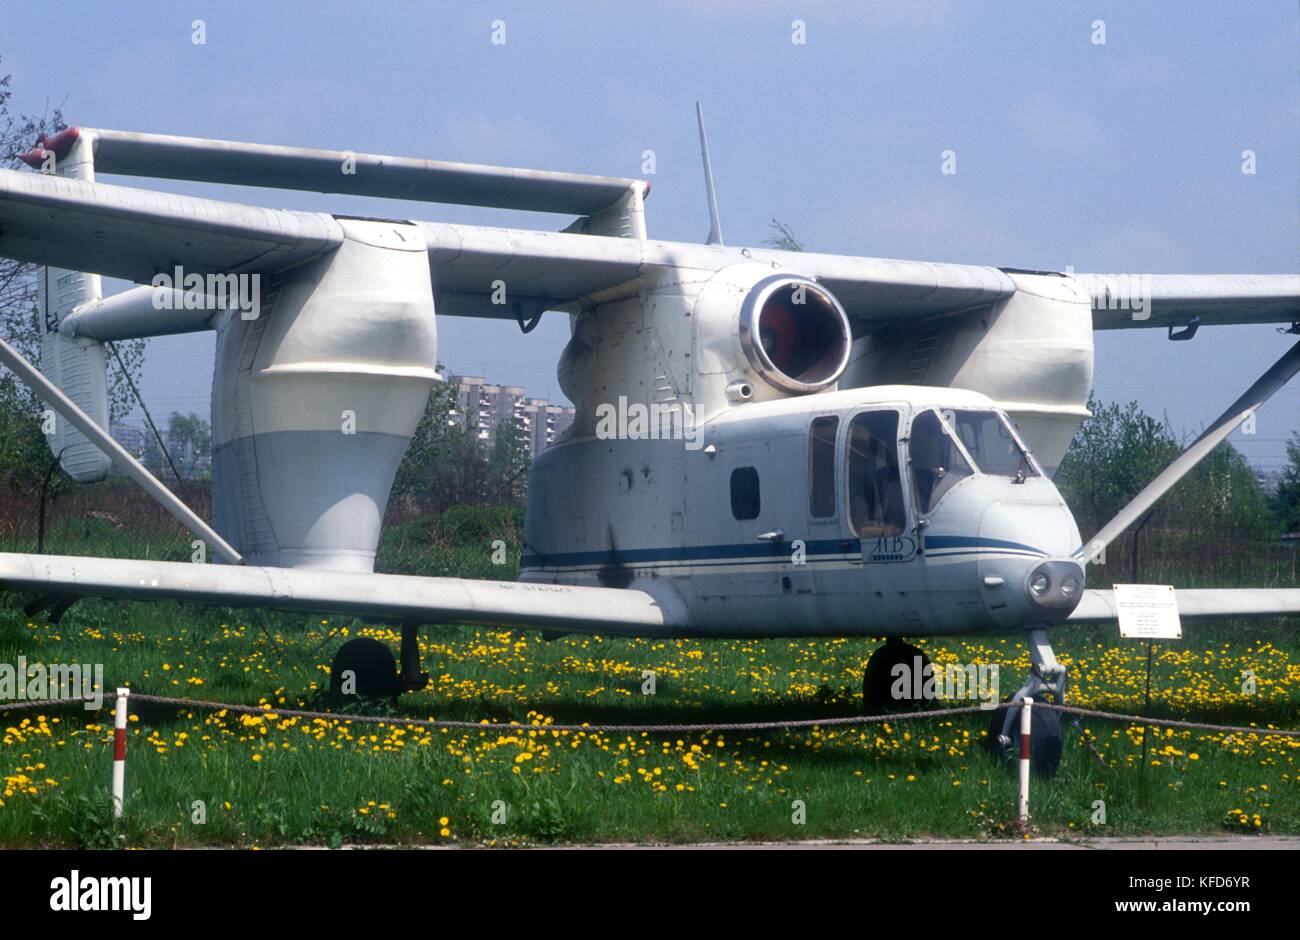 Musée de l'air de Cracovie (Pologne), pzl m-15 belphegor 'avion' (1974) Banque D'Images